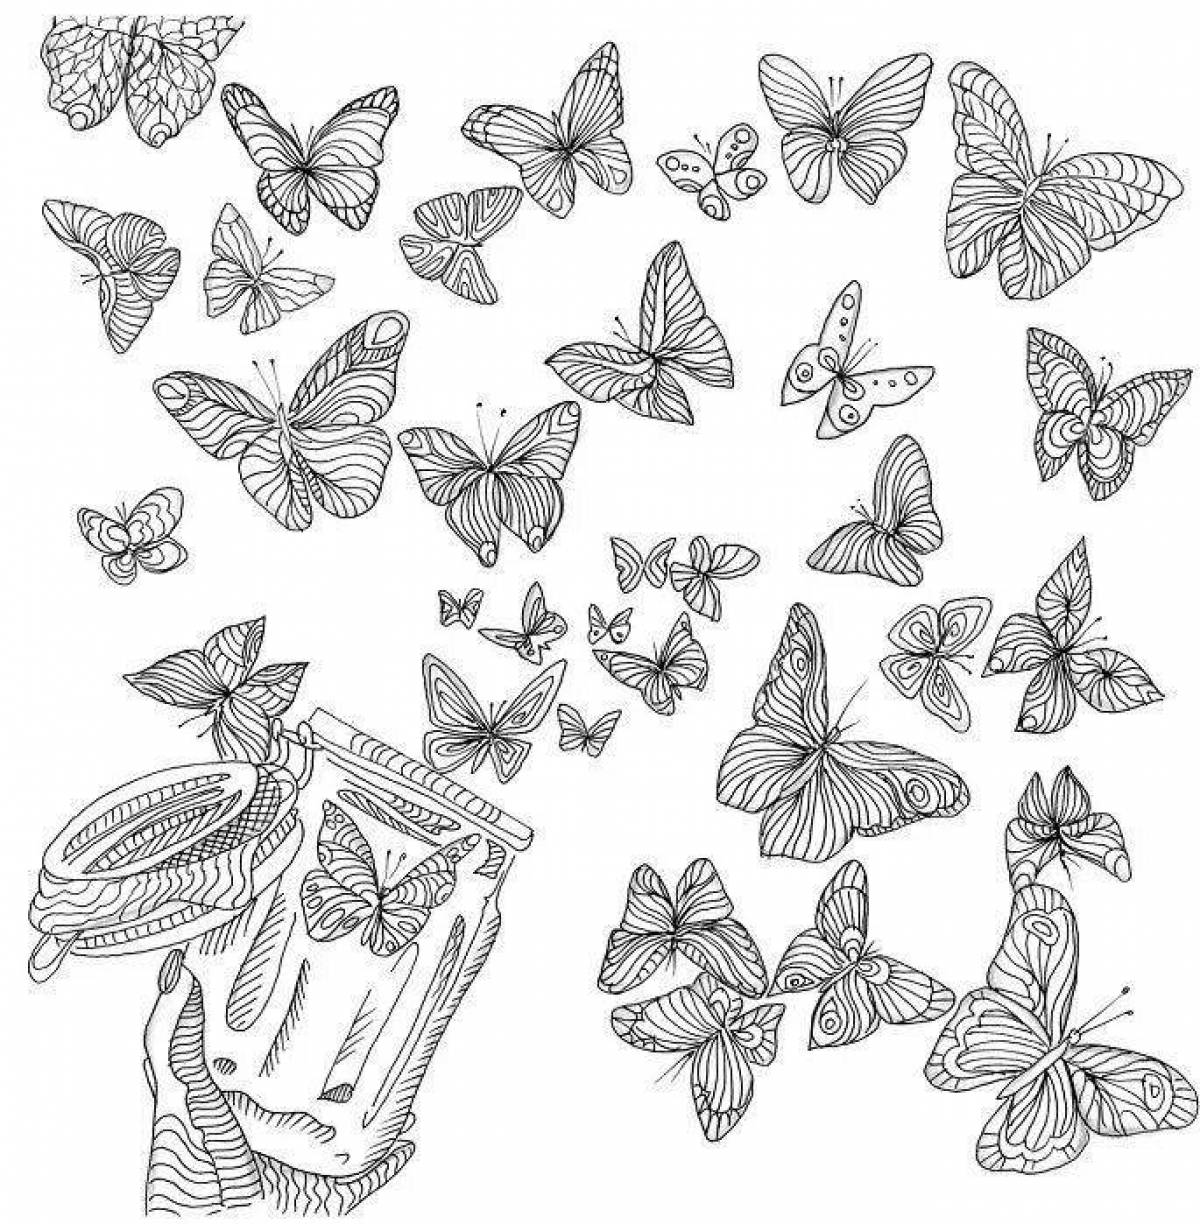 Delightful butterflies on one sheet